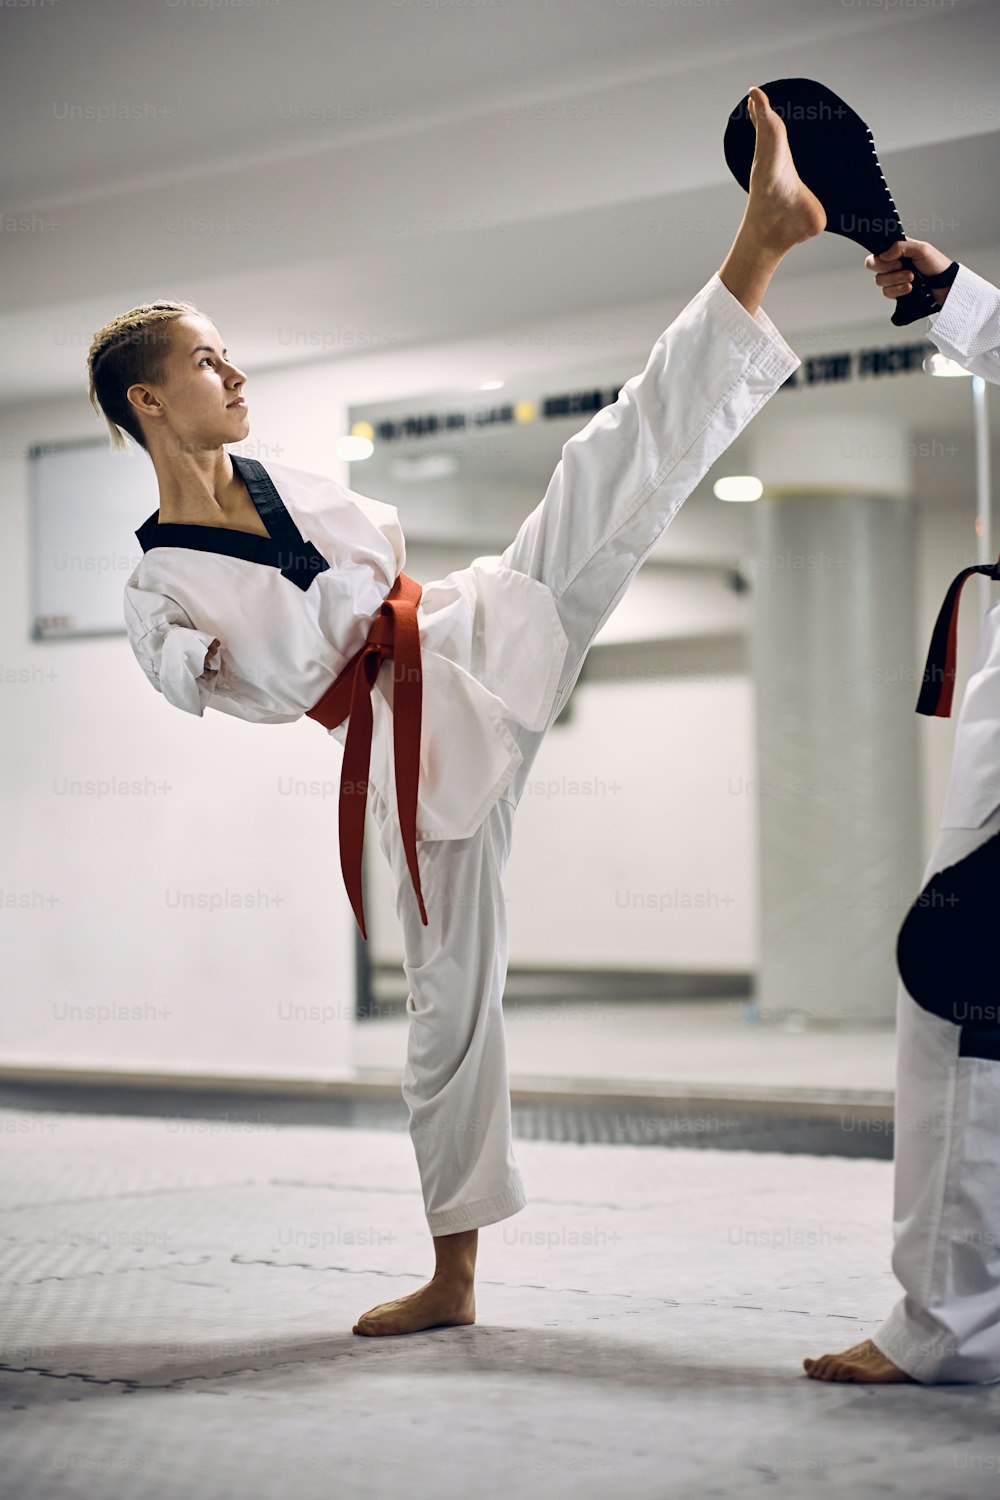 Determinata combattente di taekwondo con disabilità che pratica il calcio alto con il suo allenatore nel centro benessere.